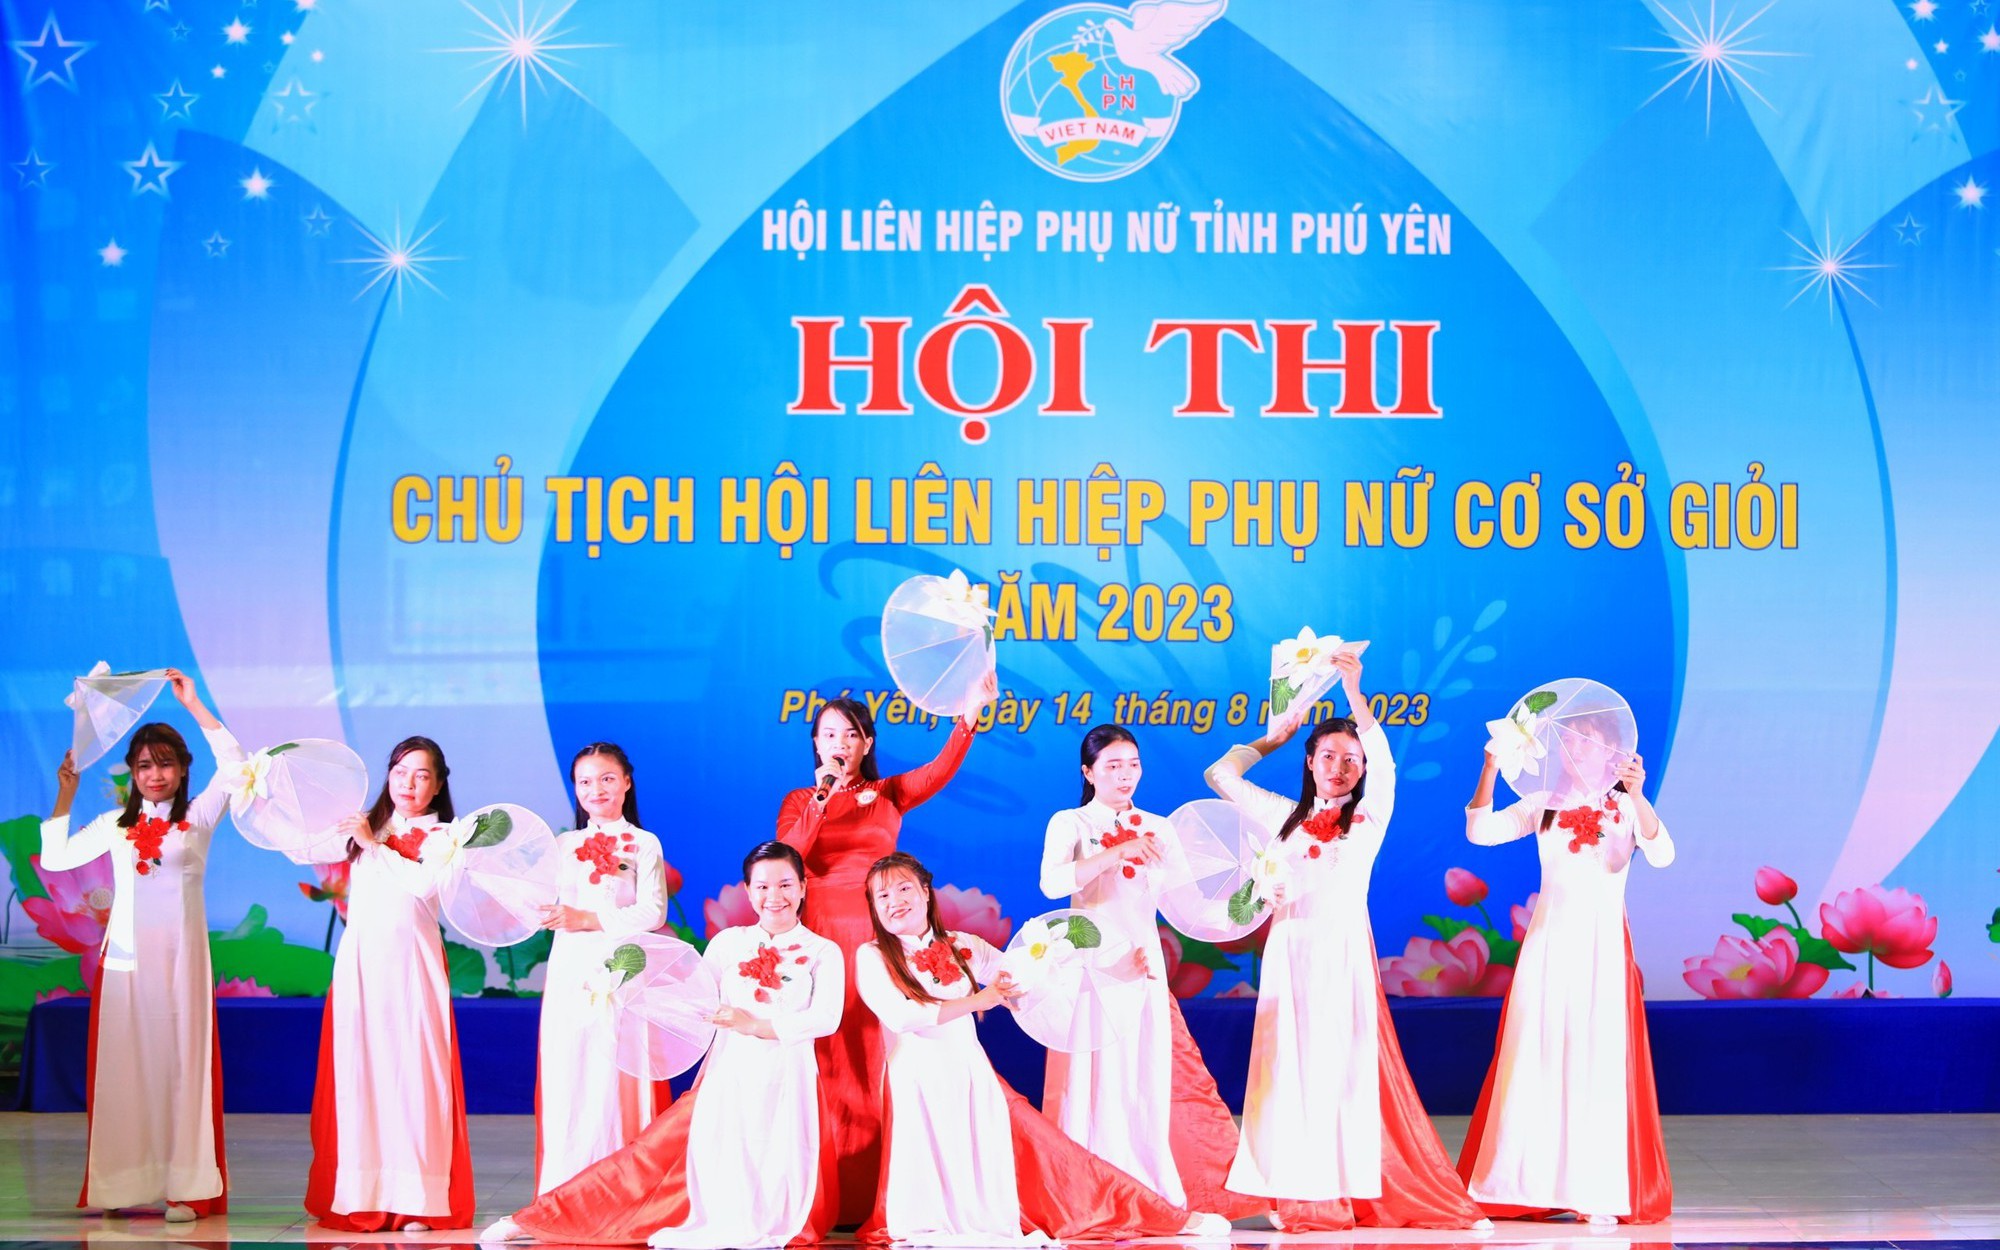 Phú Yên: 20 thí sinh tỏa sáng tại Hội thi Chủ tịch Hội LHPN cơ sở giỏi năm 2023